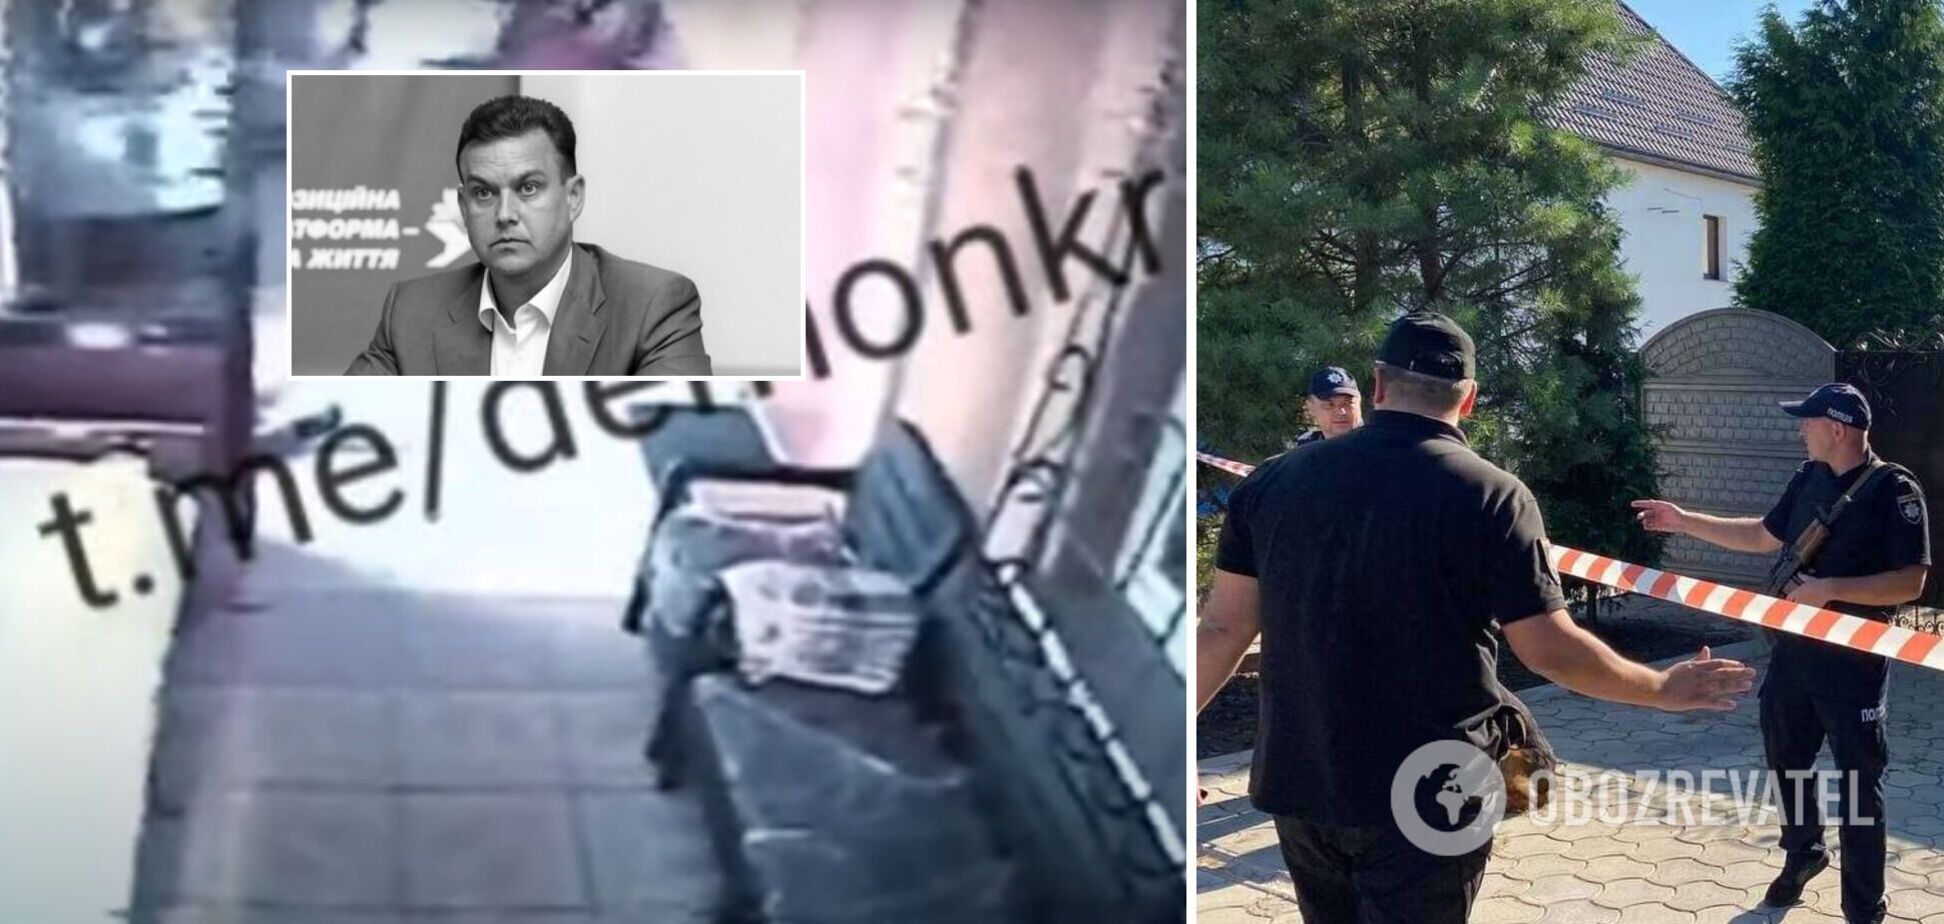 Появилось новое видео из дома погибшего мэра Кривого Рога: запечатлен момент возможного выстрела